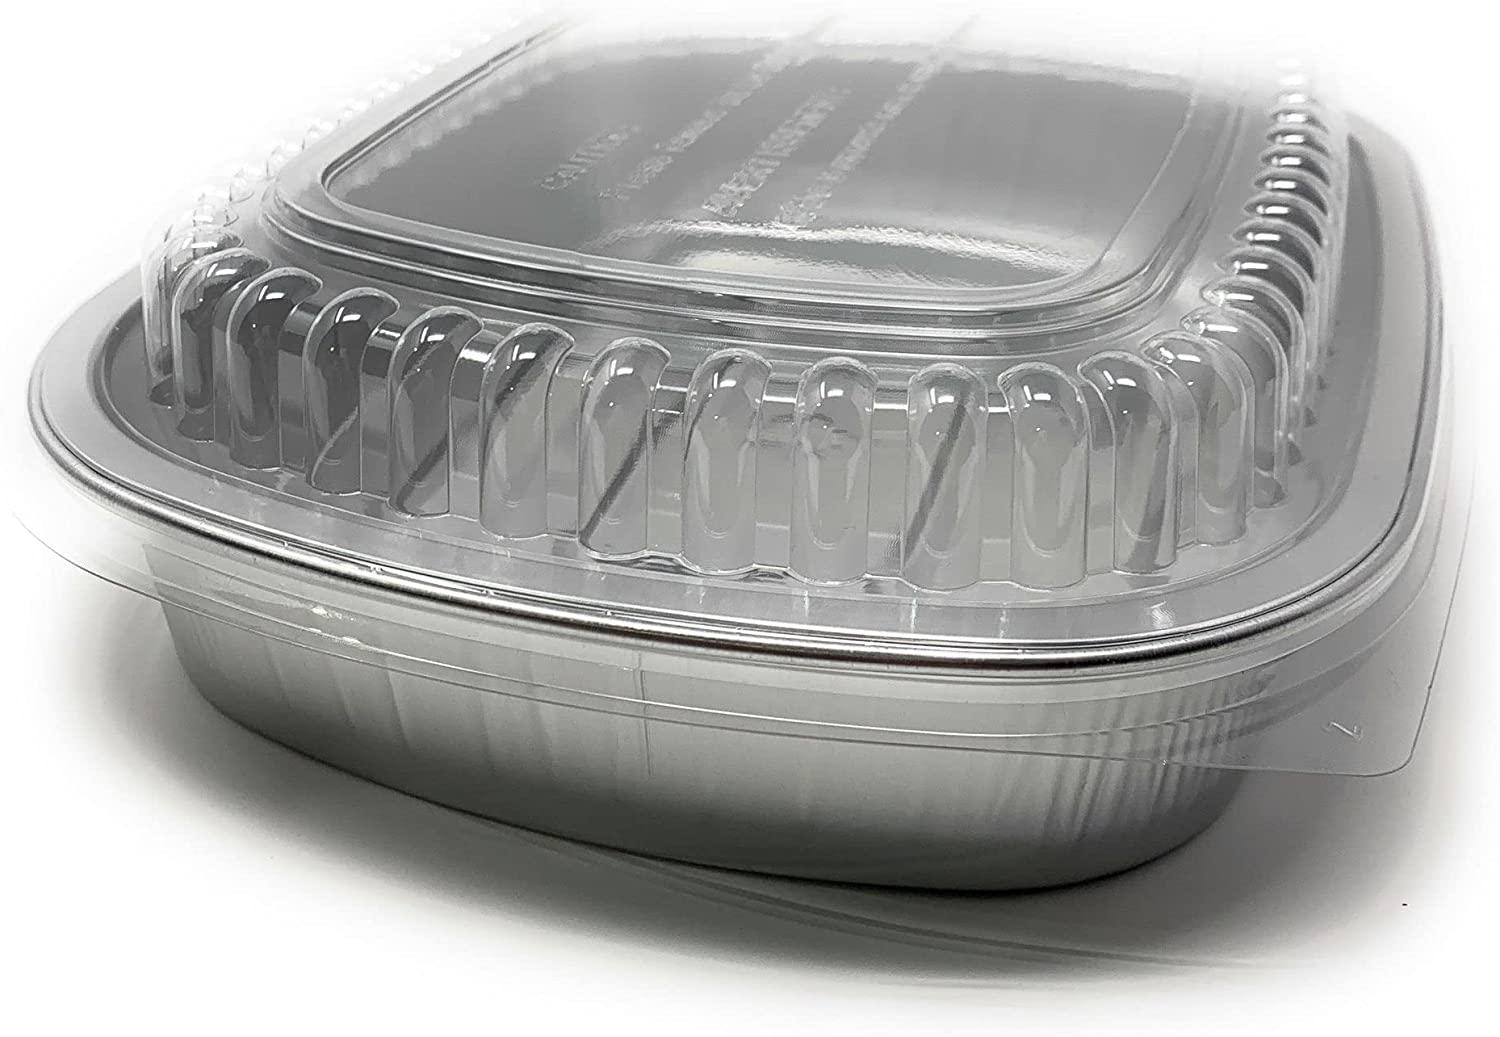 Aluminium foil food containers, Aluminium food containers, Aluminium  storage containers